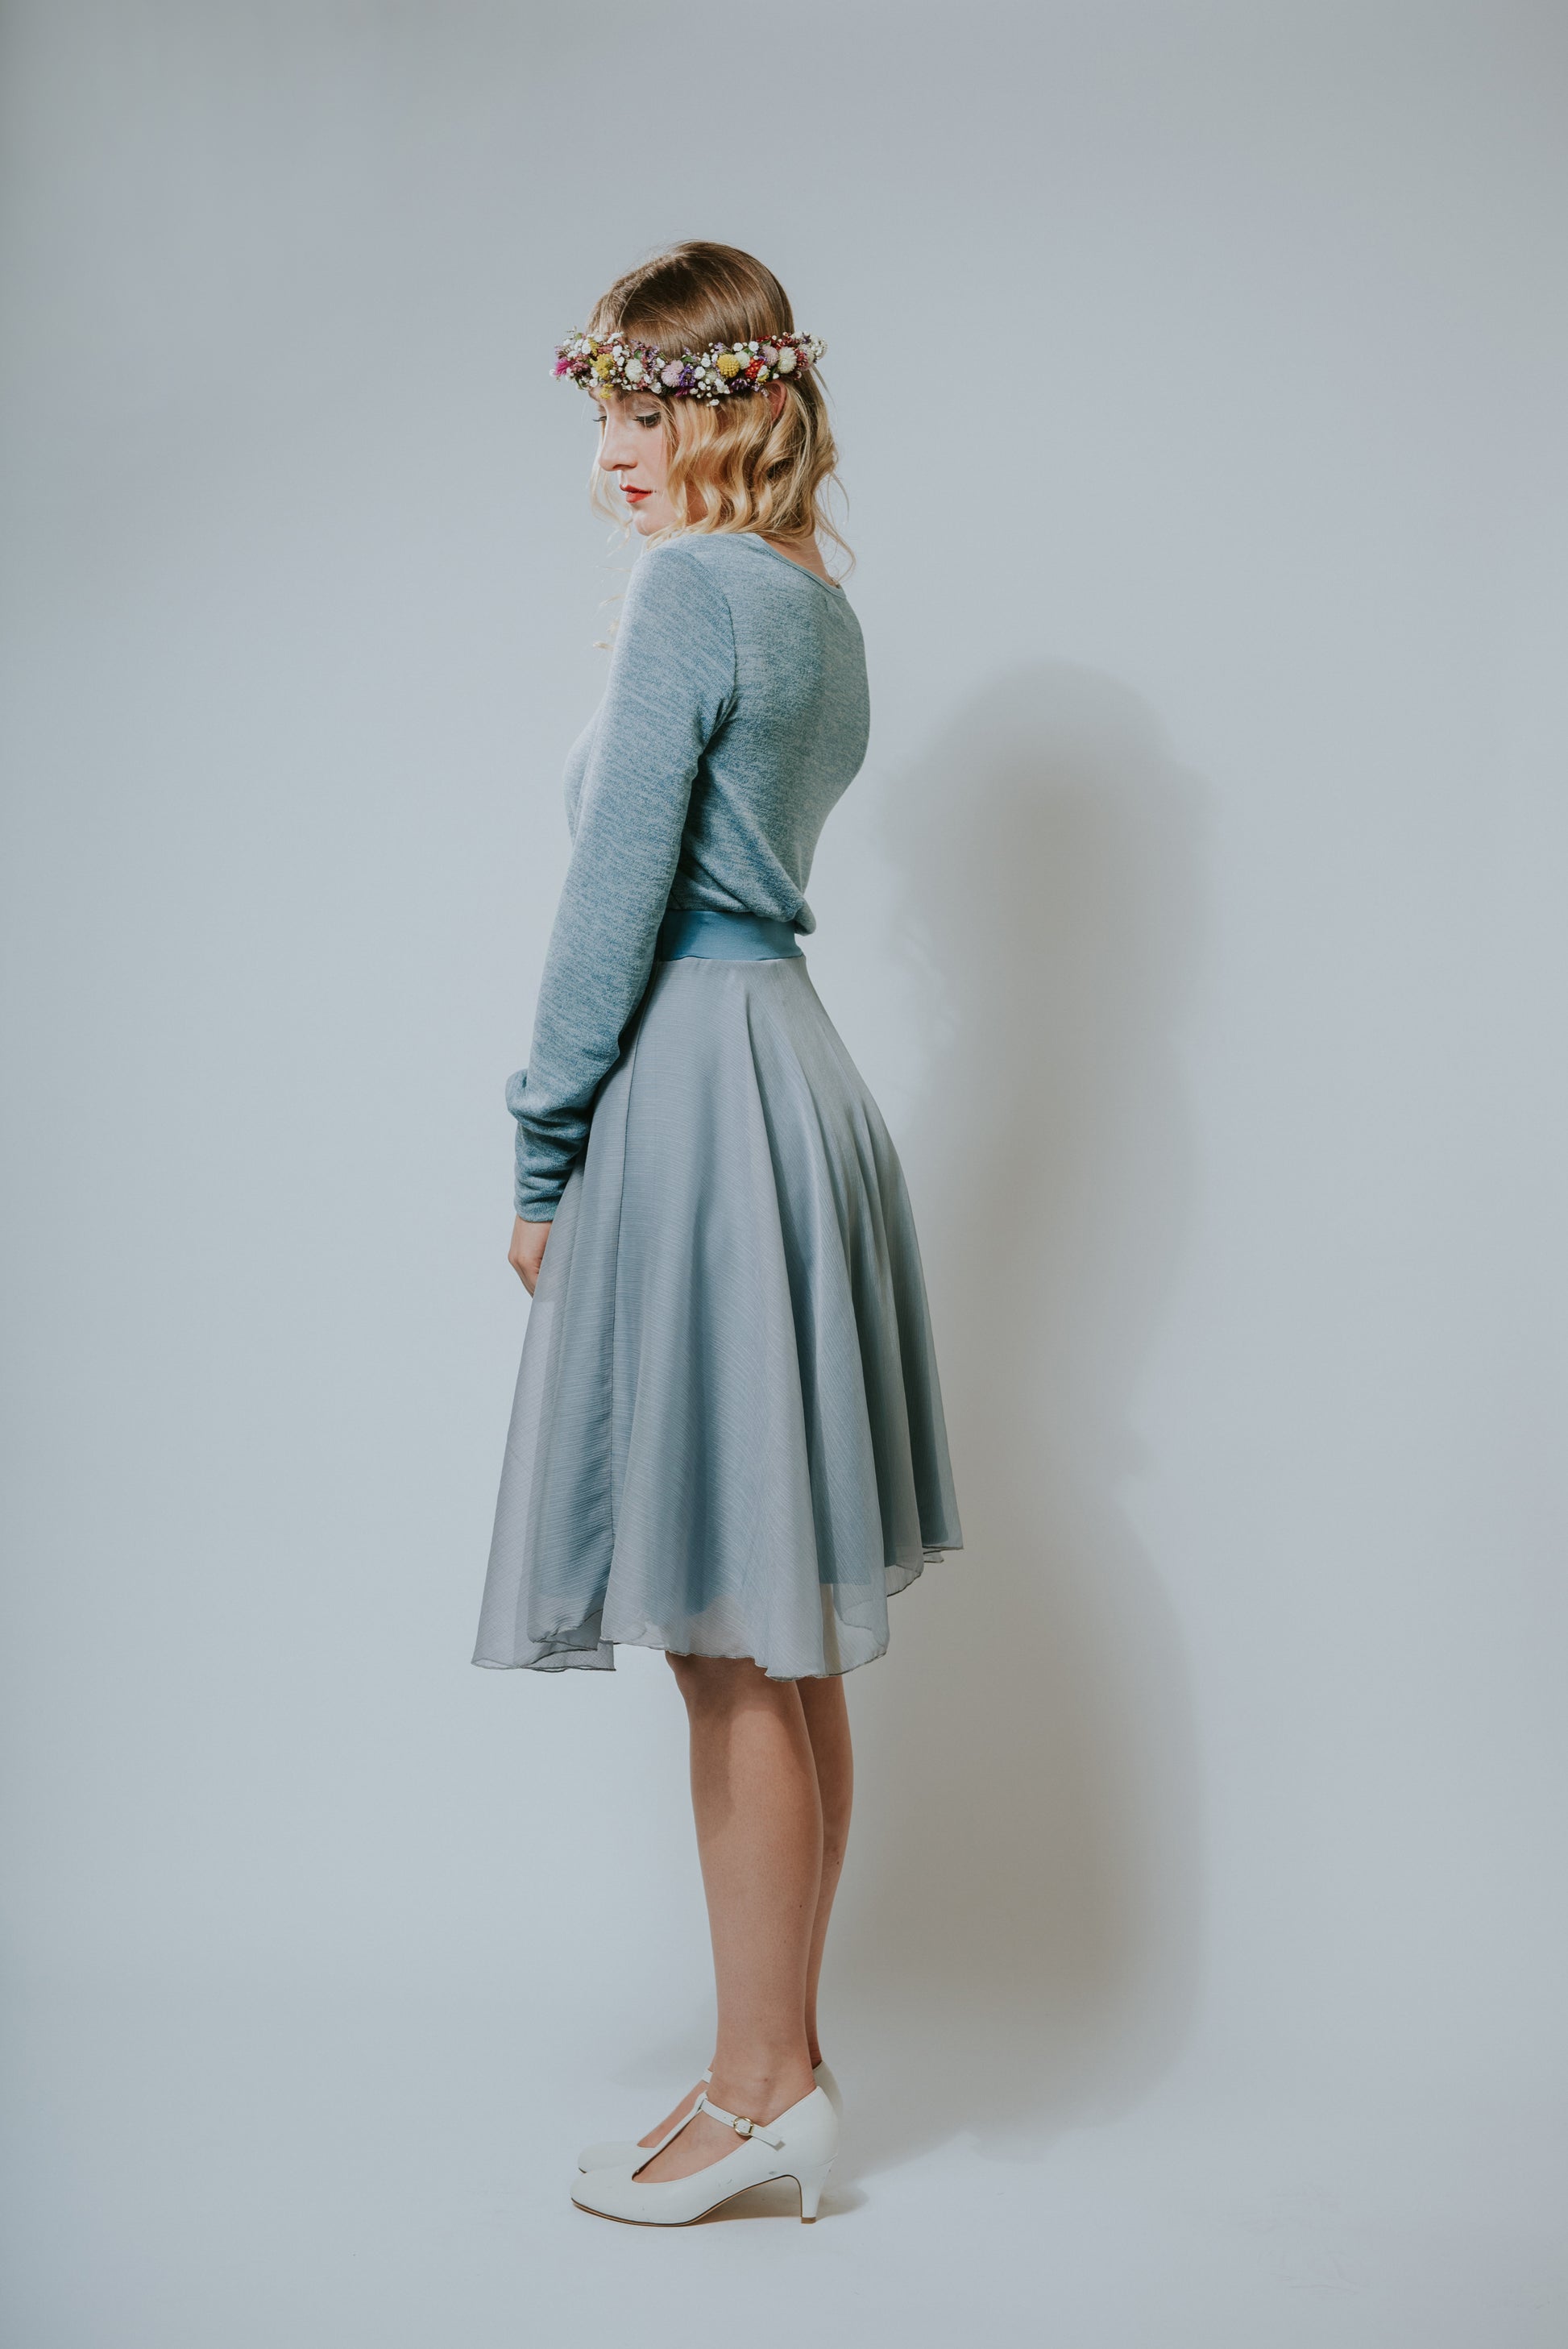 Chiffon Kleid in pudrigem Taubenblau mit einem lässig, legerem Feinstrickoberteil